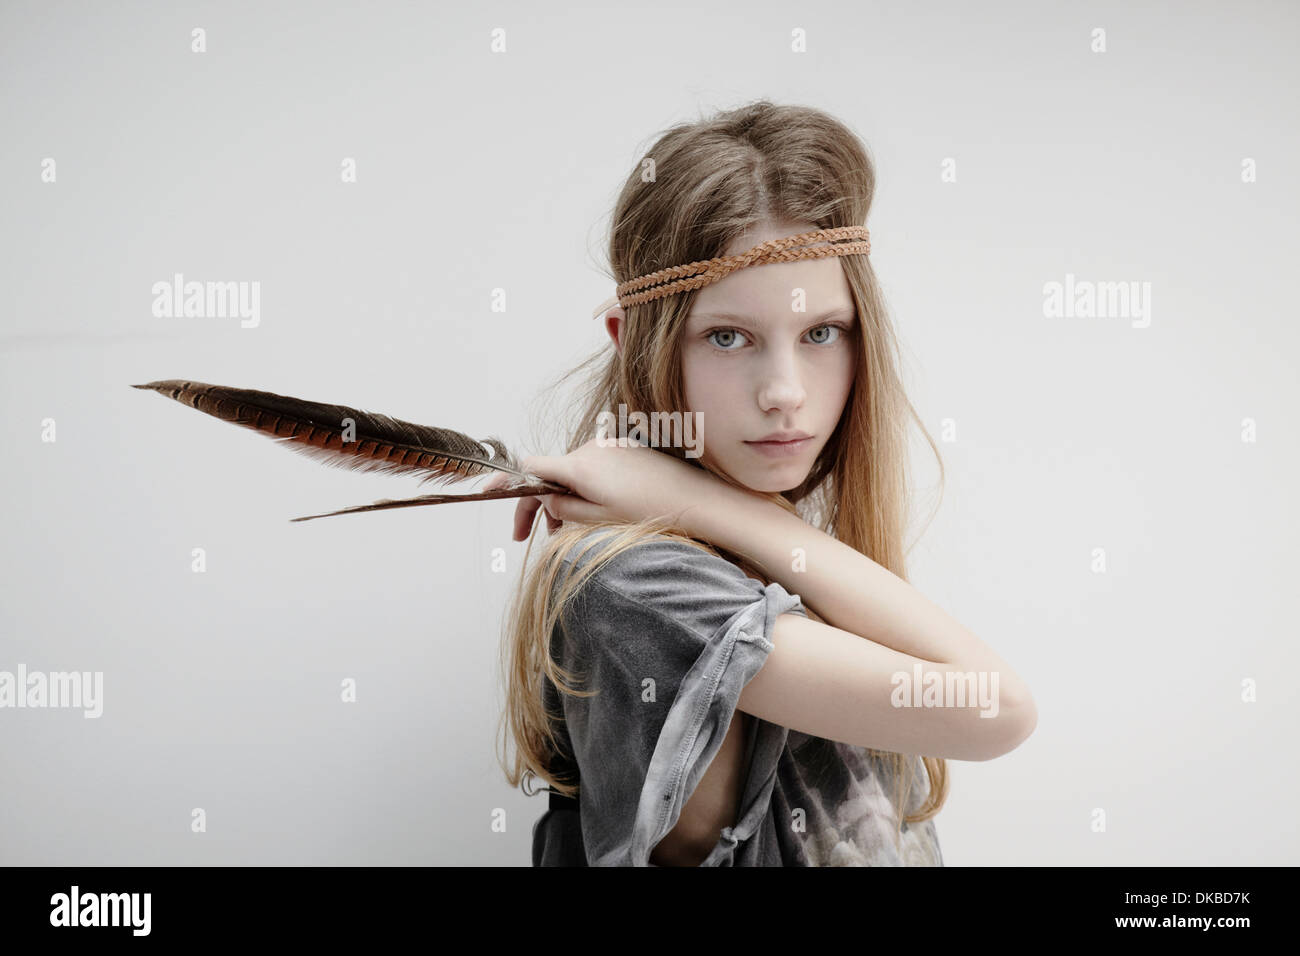 Portrait of Girl wearing tresse cuir autour de tête, holding feather Banque D'Images